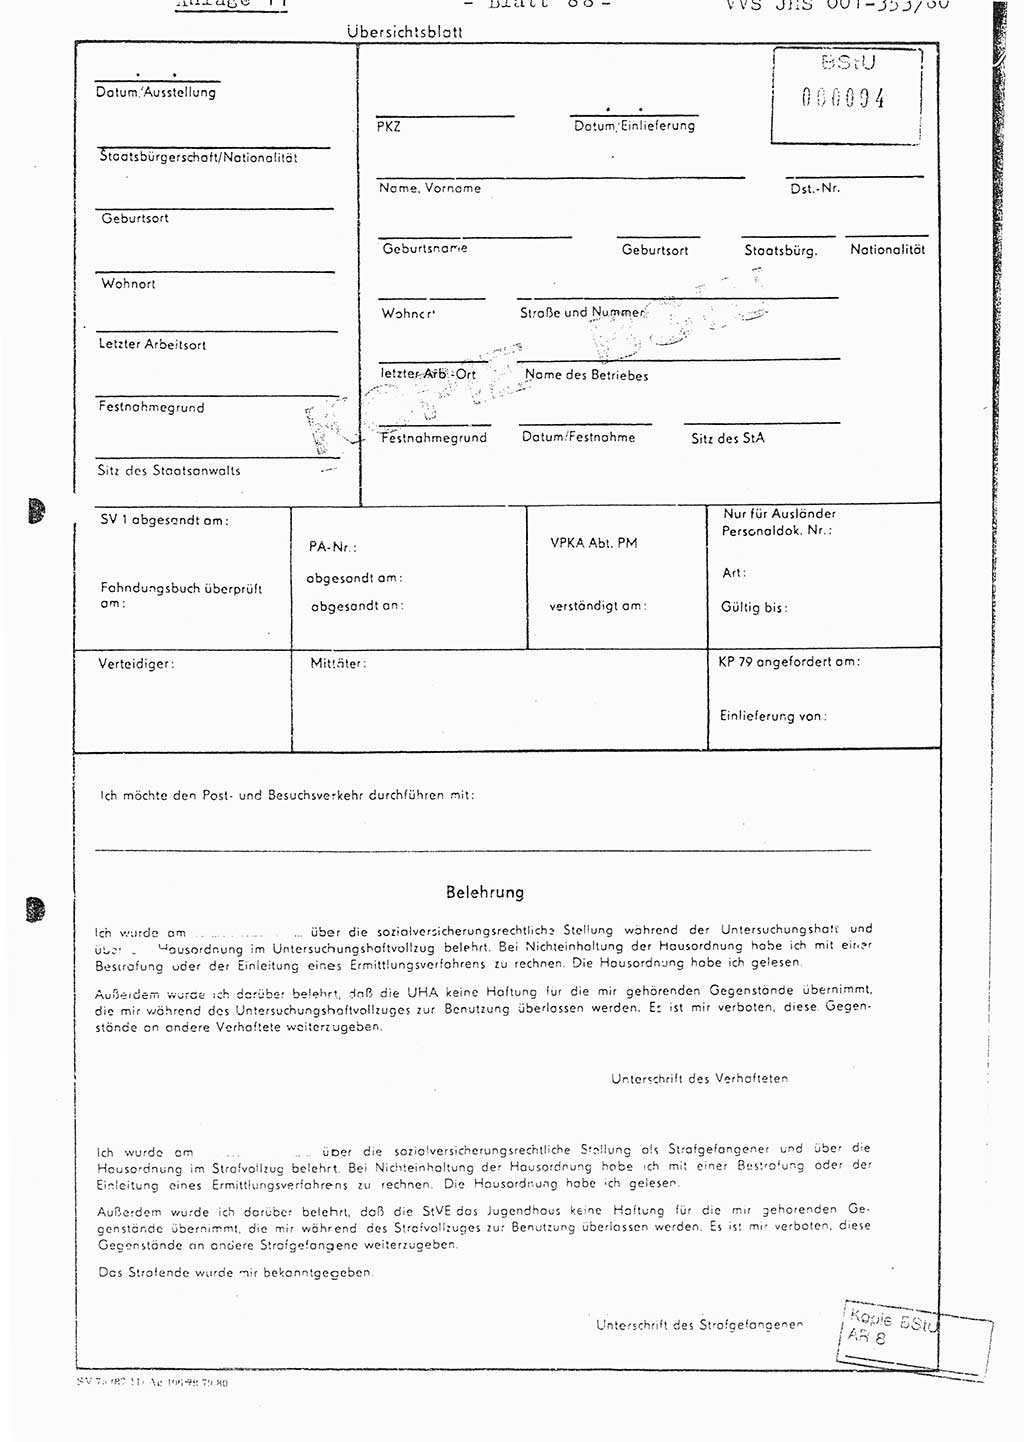 Diplomarbeit Hauptmann Joachim Klaumünzner (Abt. ⅩⅣ), Ministerium für Staatssicherheit (MfS) [Deutsche Demokratische Republik (DDR)], Juristische Hochschule (JHS), Vertrauliche Verschlußsache (VVS) o001-353/80, Potsdam 1980, Blatt 88 (Dipl.-Arb. MfS DDR JHS VVS o001-353/80 1980, Bl. 88)